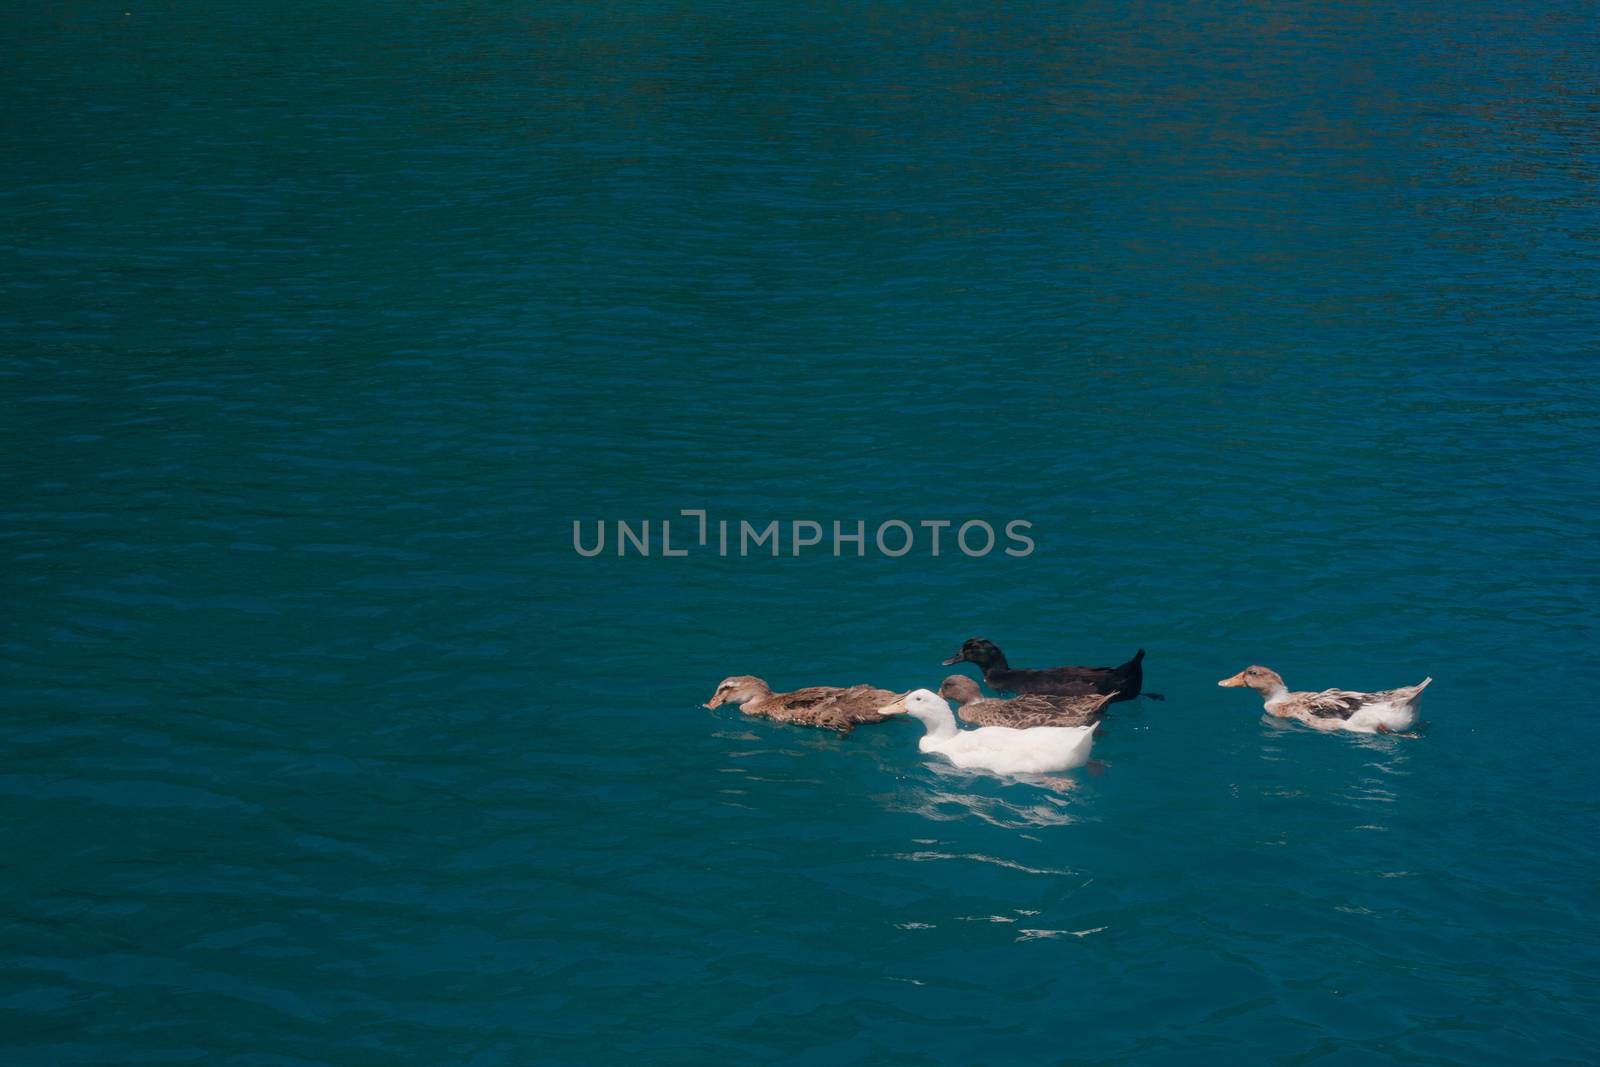 Ducks in blue water by foaloce